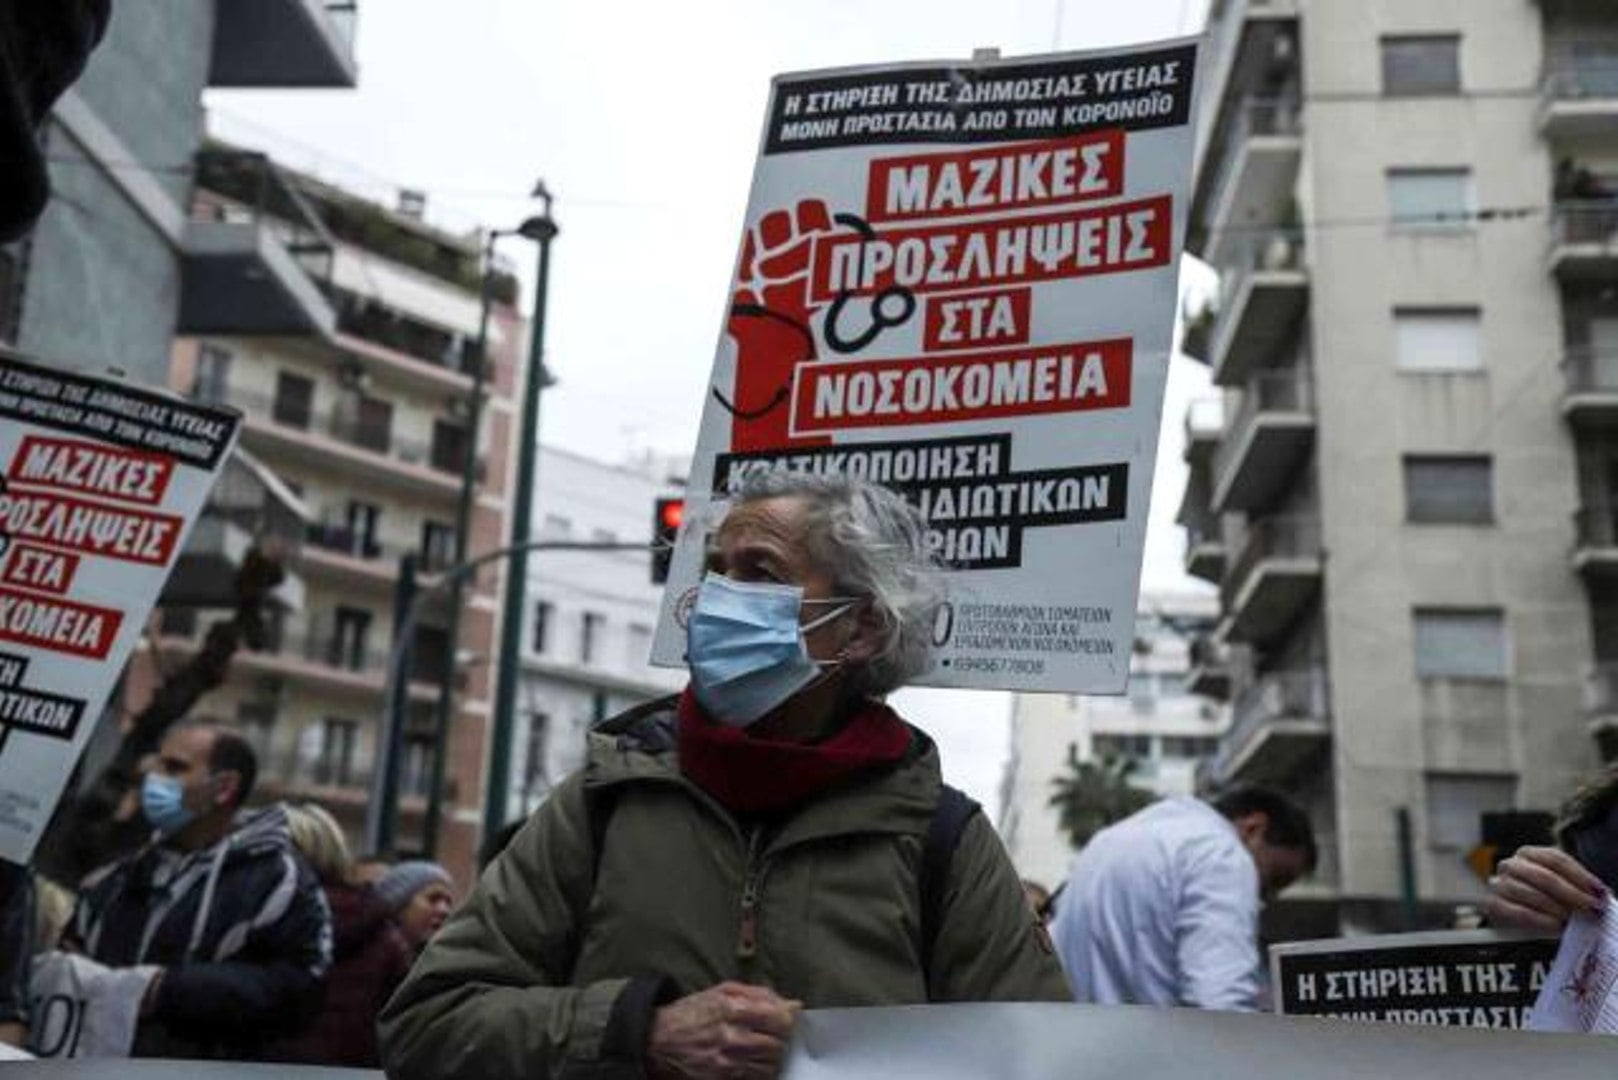 Yunanistan’da sağlık çalışanları ek ödenek talebiyle eylem yaptı